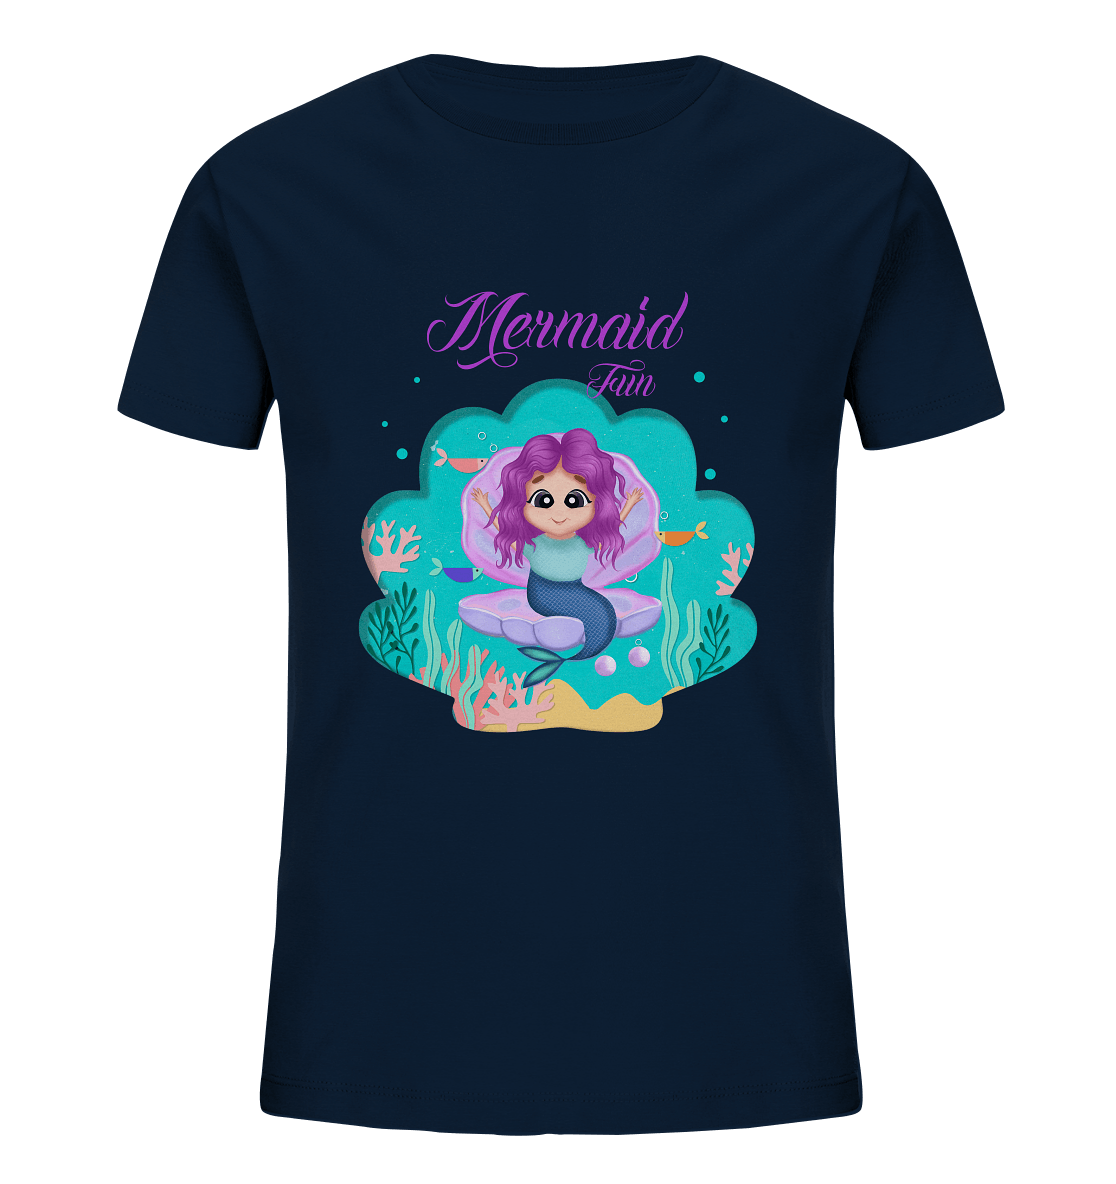 Meerjungfrau Cartoon T-Shirt mit handgezeichneten Mermaid Cartoon und Beschriftung "Mermaid Fun" baby ariel T-Shirt in navy blau